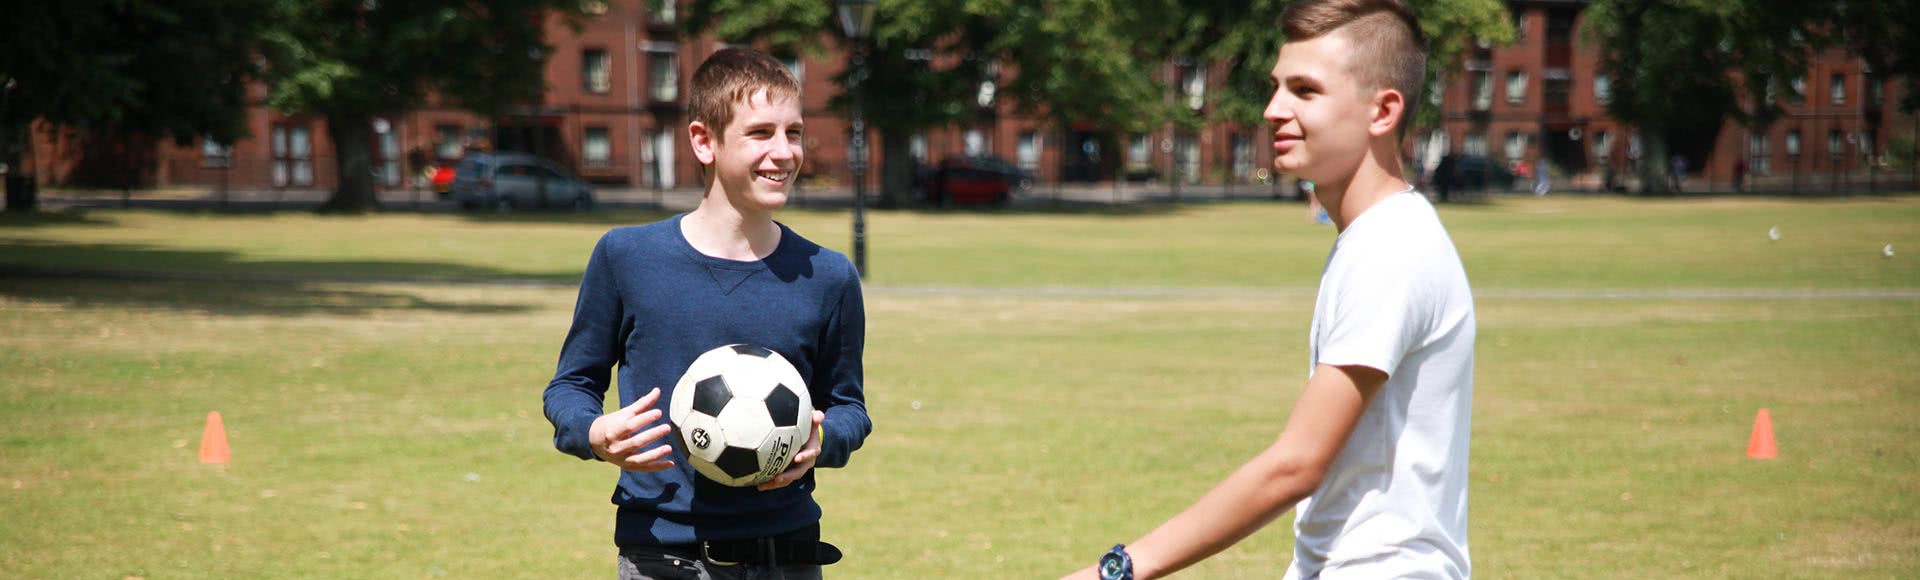 Cursos de Inglés y fútbol para jóvenes en Inglaterra